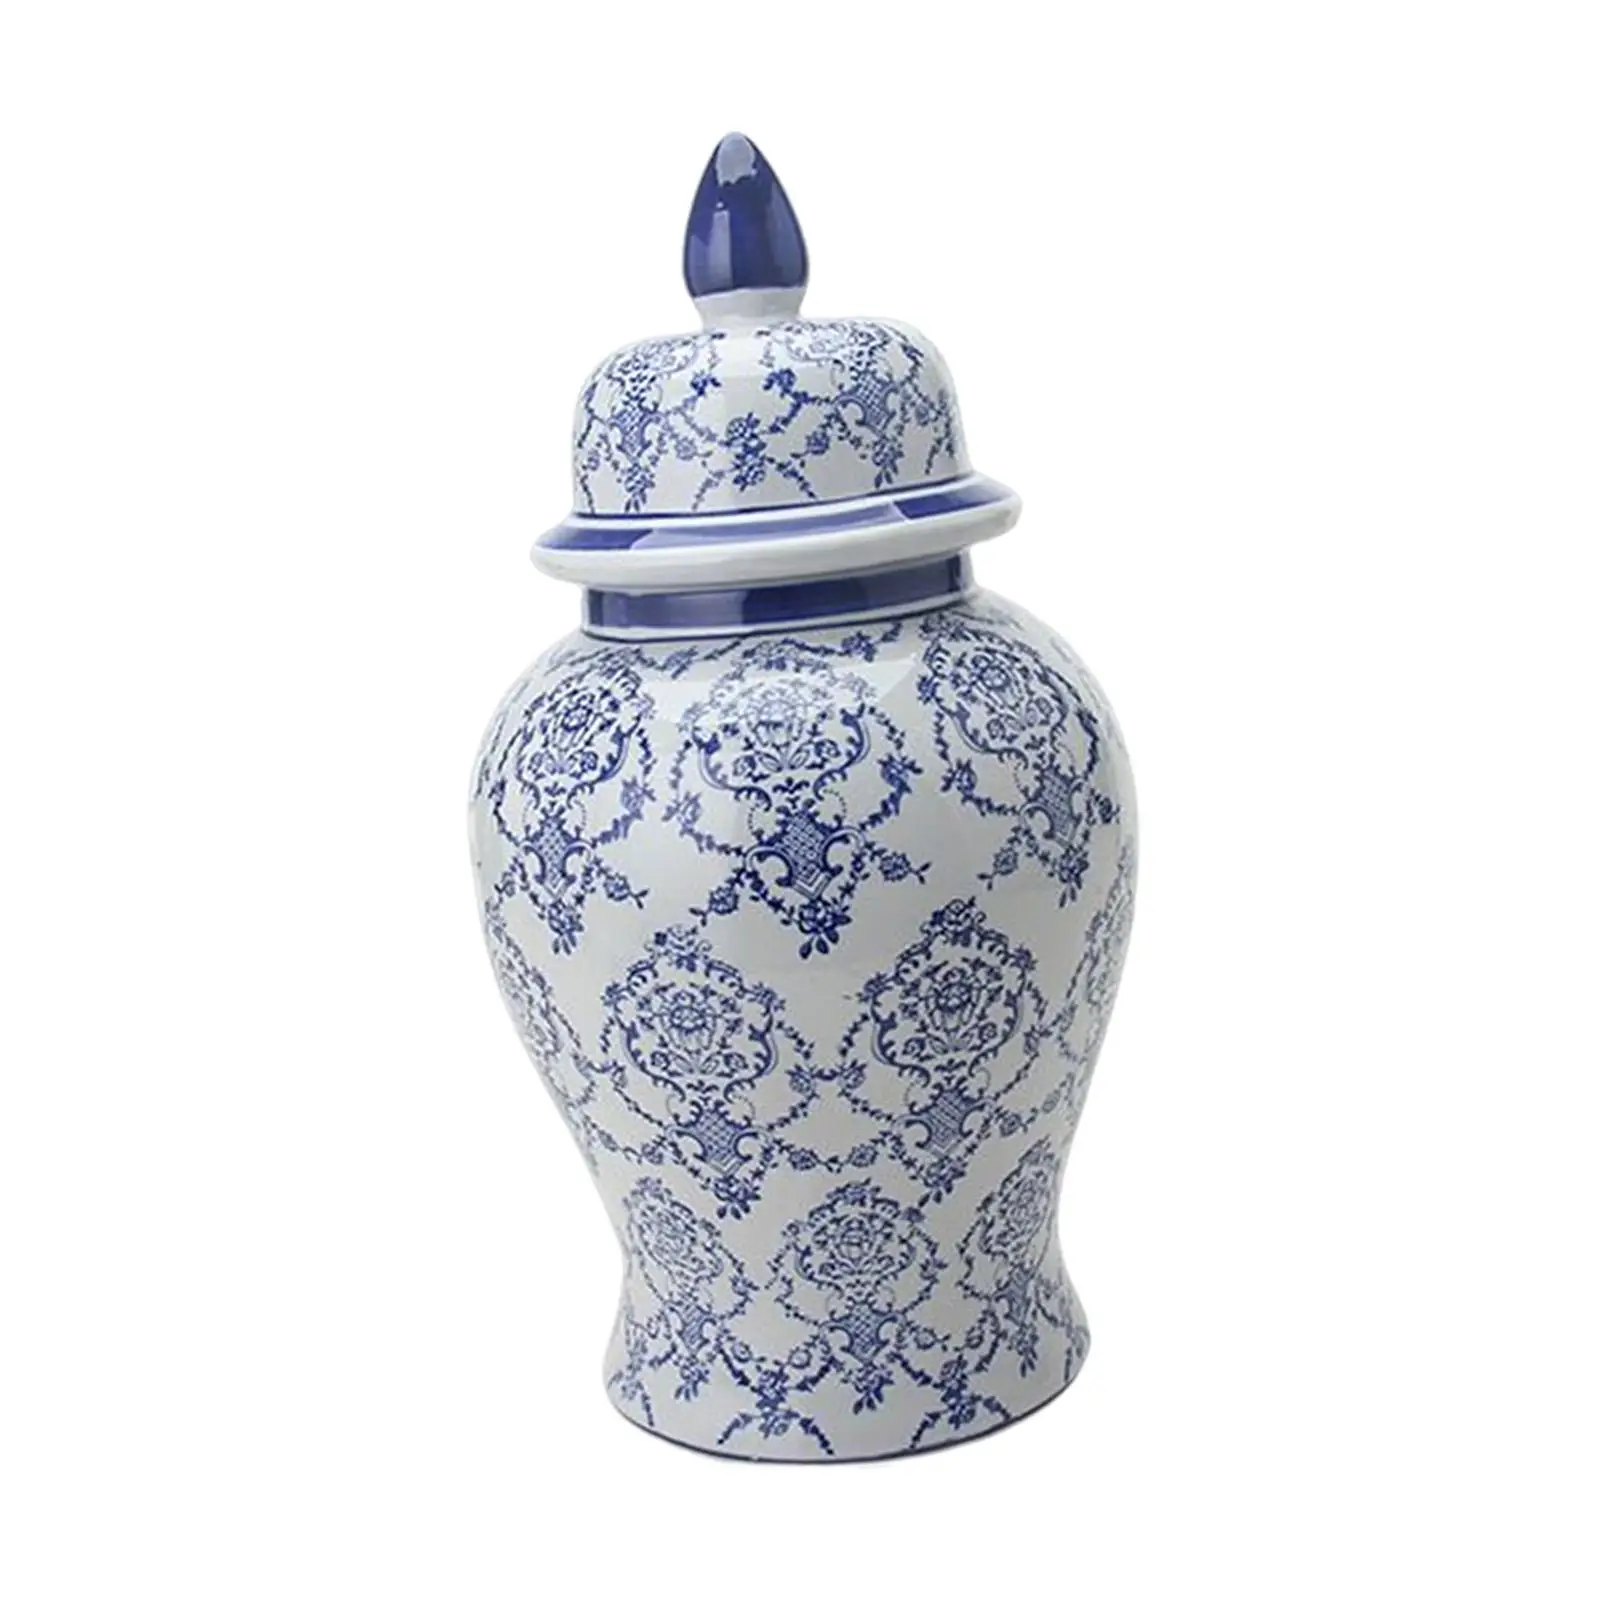 Blue White Porcelain Ginger Jar Glazed Temple Jar Plants Holder Home Decor Versatile Decorative Ceramic Flower Vase Desktop